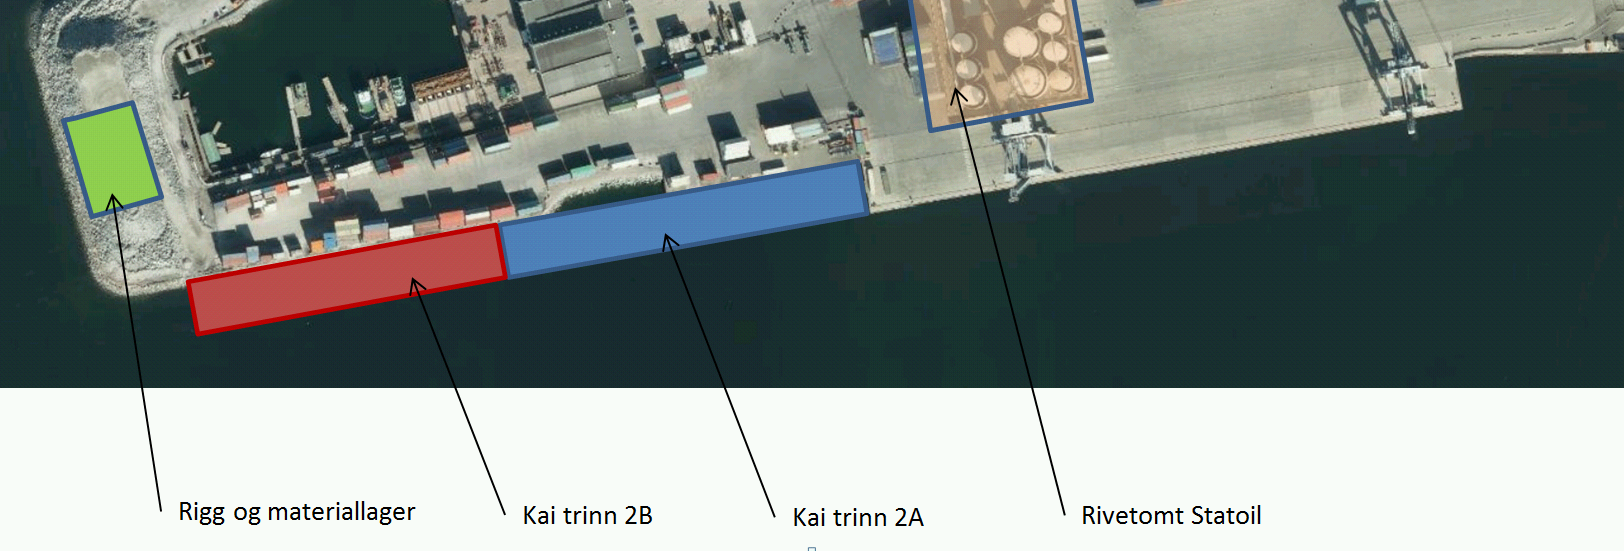 Oslo Havn KF Side: 2 Areralsituasjonen på Sjursøya containerterminal under byggeperioden blir vanskelig med både anleggsdrift og havnedrift side om side.